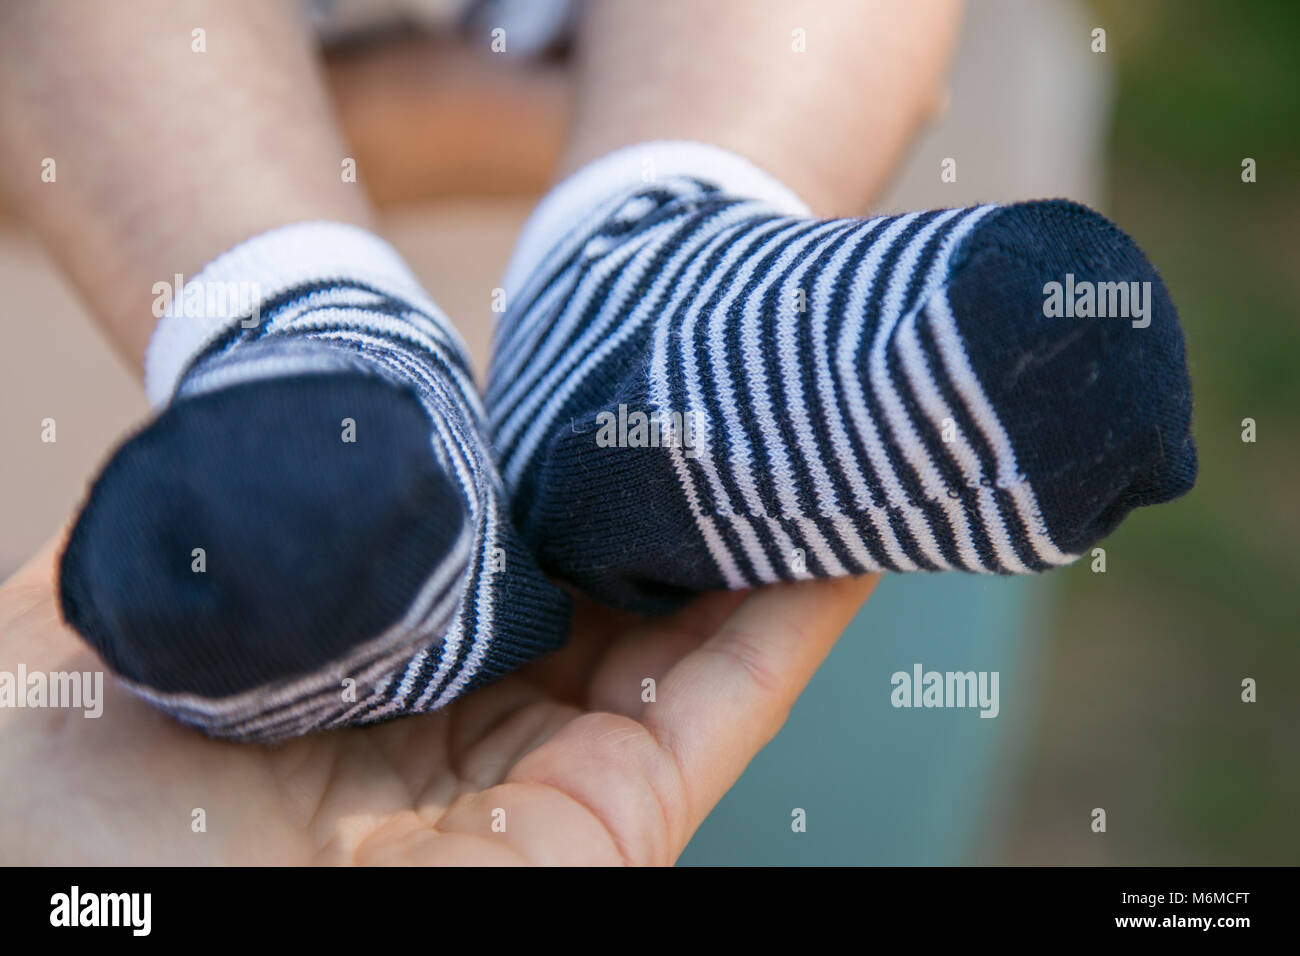 Detalle de los pies del niño, con calcetines blancos y azules, en la mano  de su abuela Fotografía de stock - Alamy